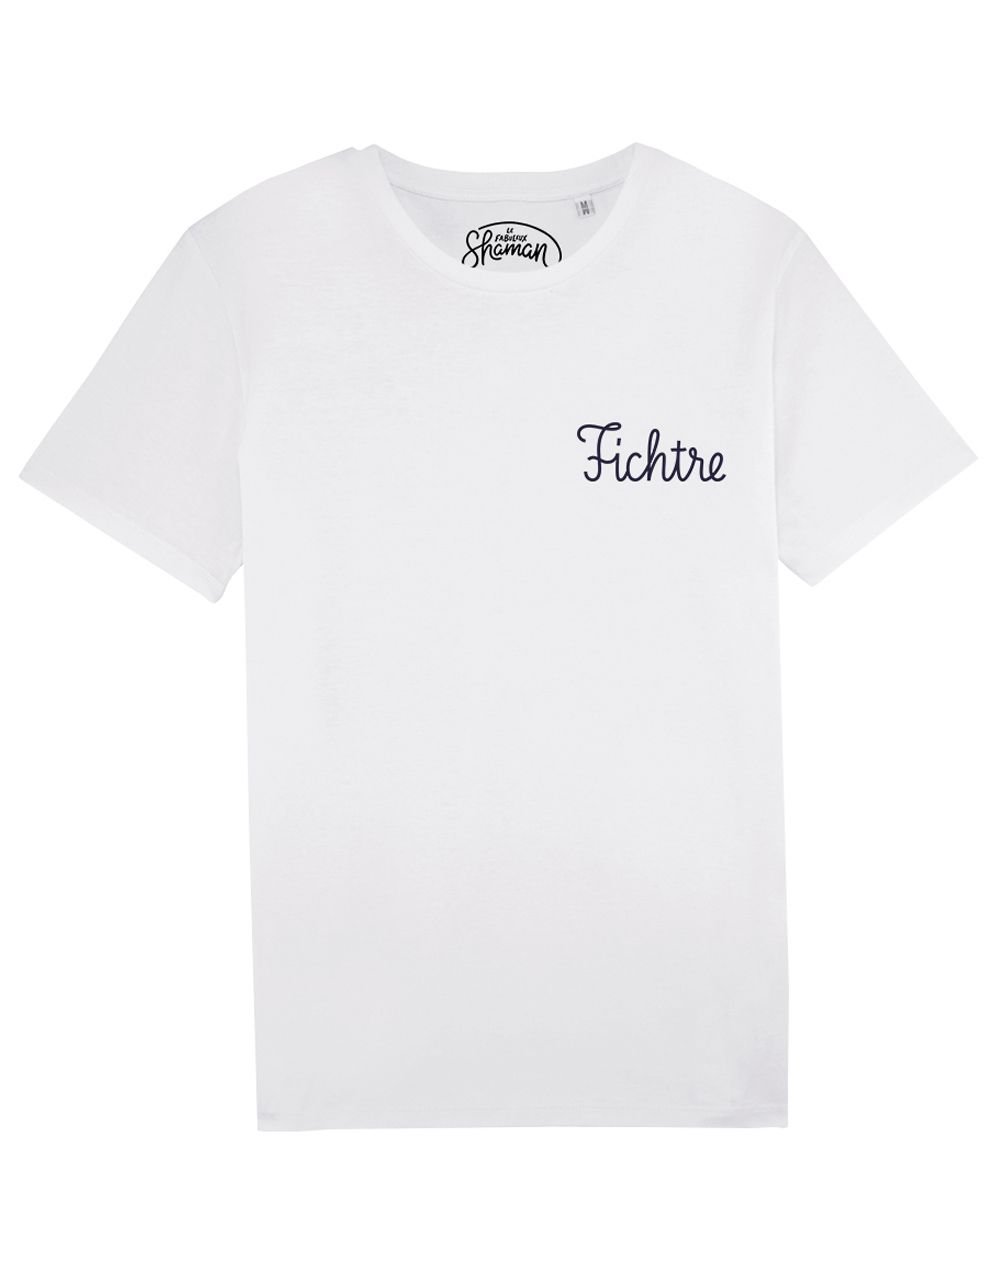 Tee-shirt "Fichtre"